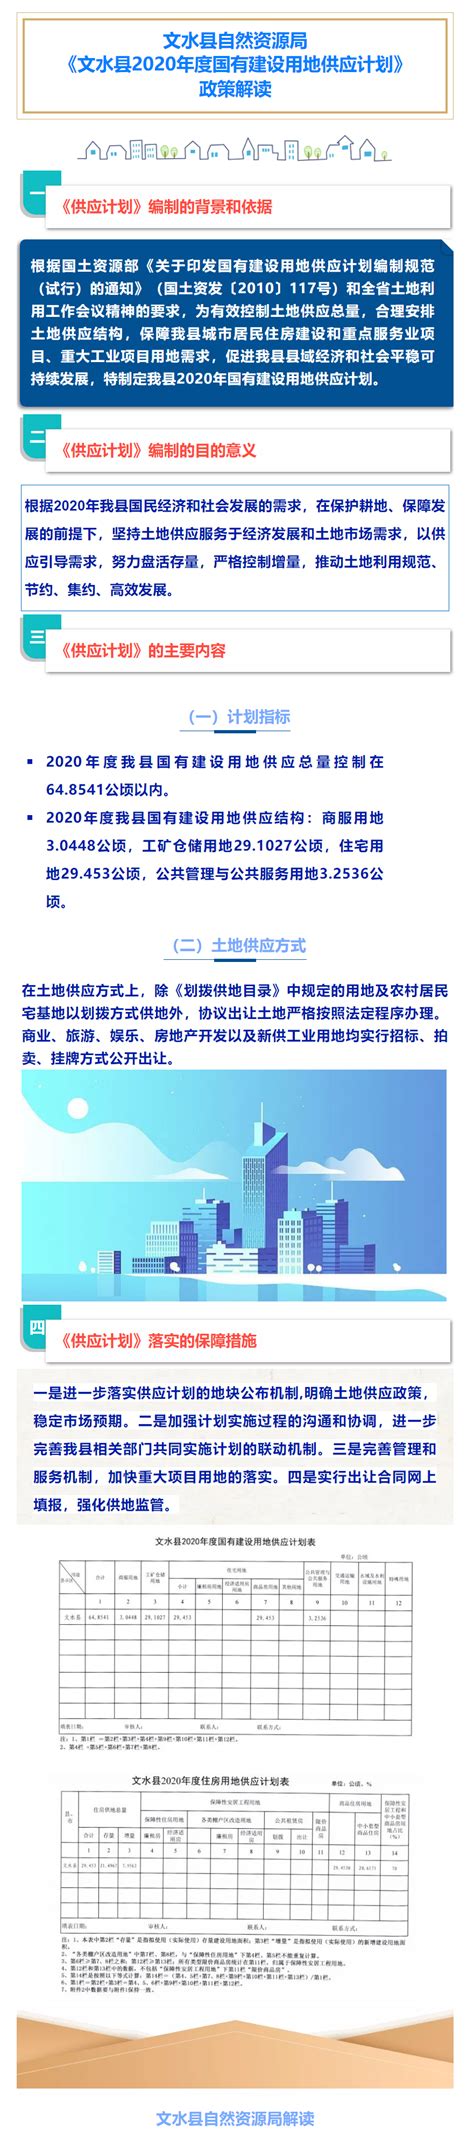 文水县积极开展纪念“世界水日”“中国水周”活动